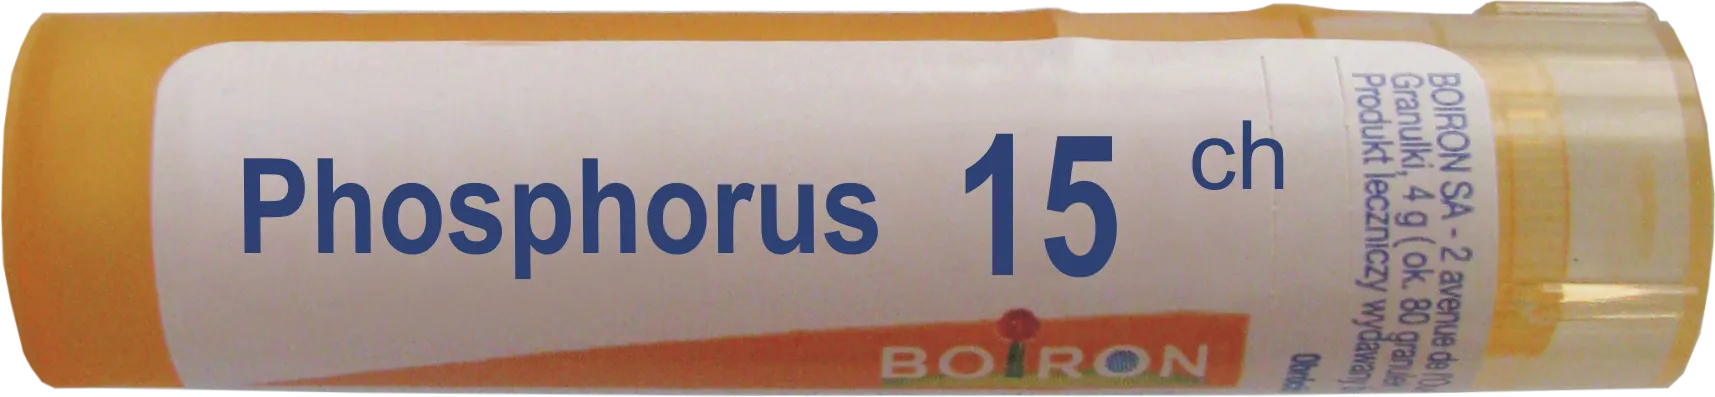 Boiron Phosphorus 15 CH, granulki, 4 g